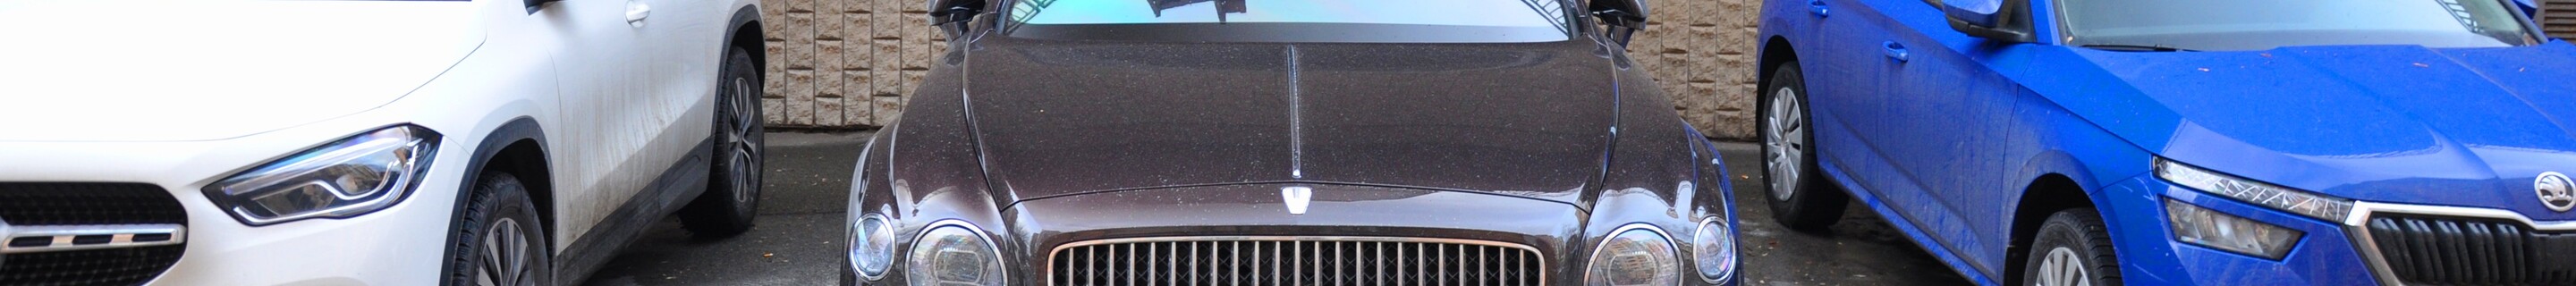 Bentley Flying Spur V8 2021